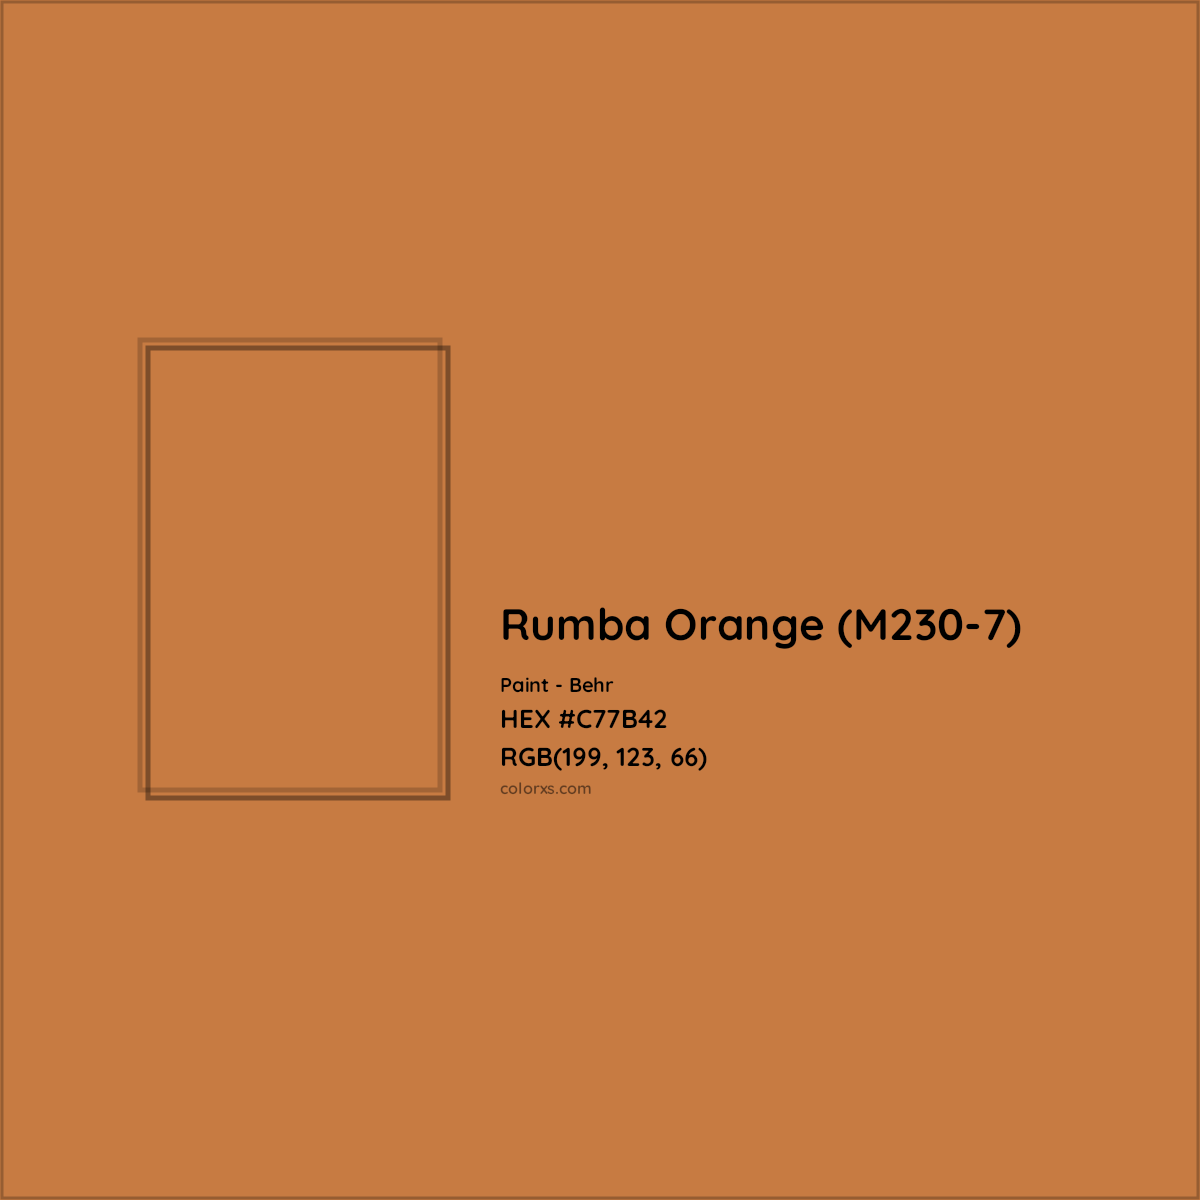 HEX #C77B42 Rumba Orange (M230-7) Paint Behr - Color Code